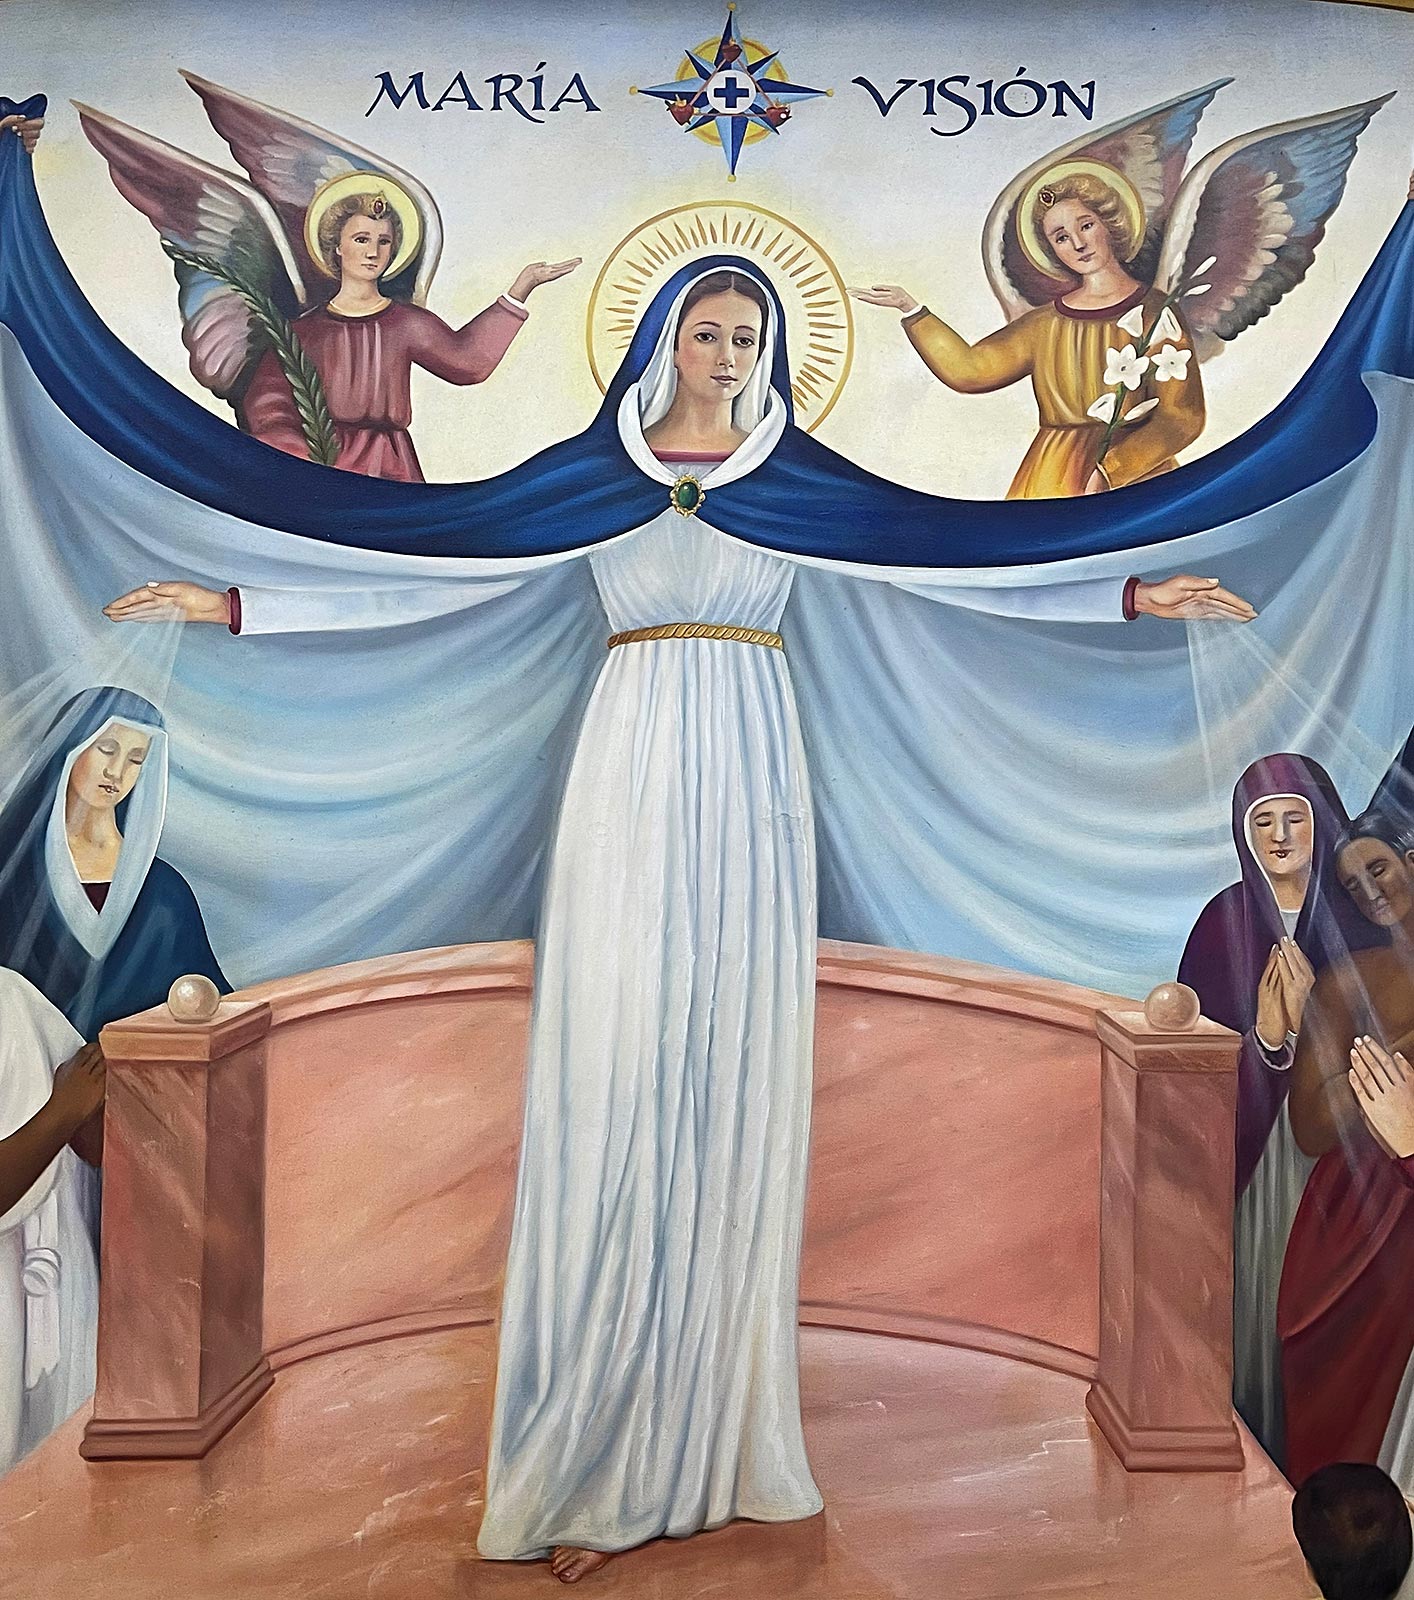 Gemälde von Maria, Marienzentrum in der Nähe der Basilika Unserer Lieben Frau von Zapopan, Guadalajara